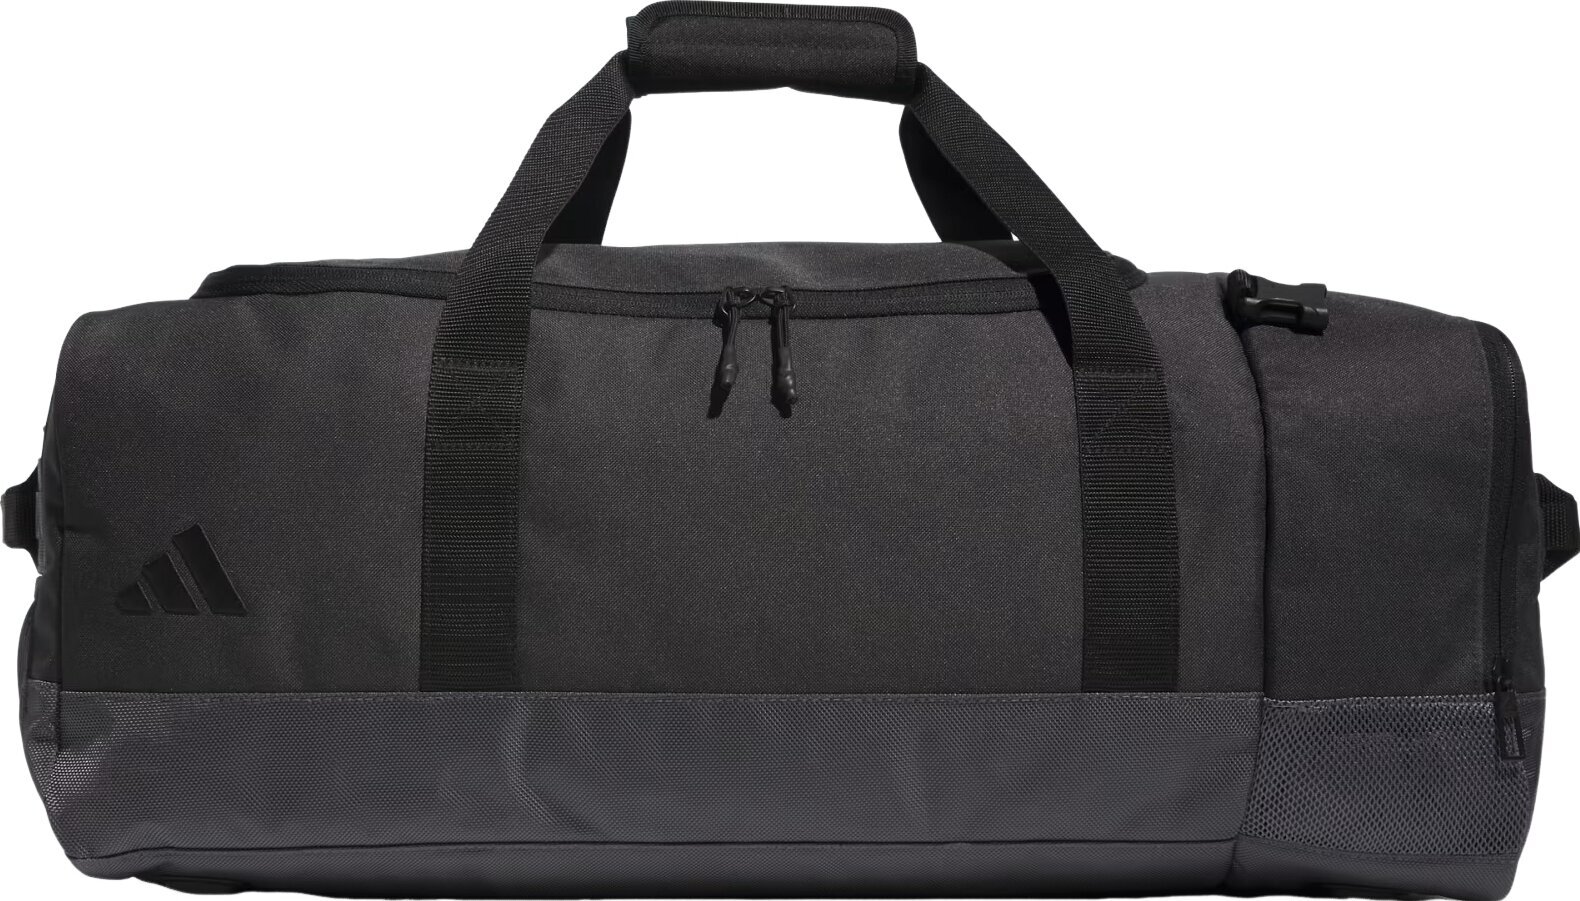 Mochila / Bolsa Lifestyle Adidas Hybrid Duffle Bag Grey Sport Bag